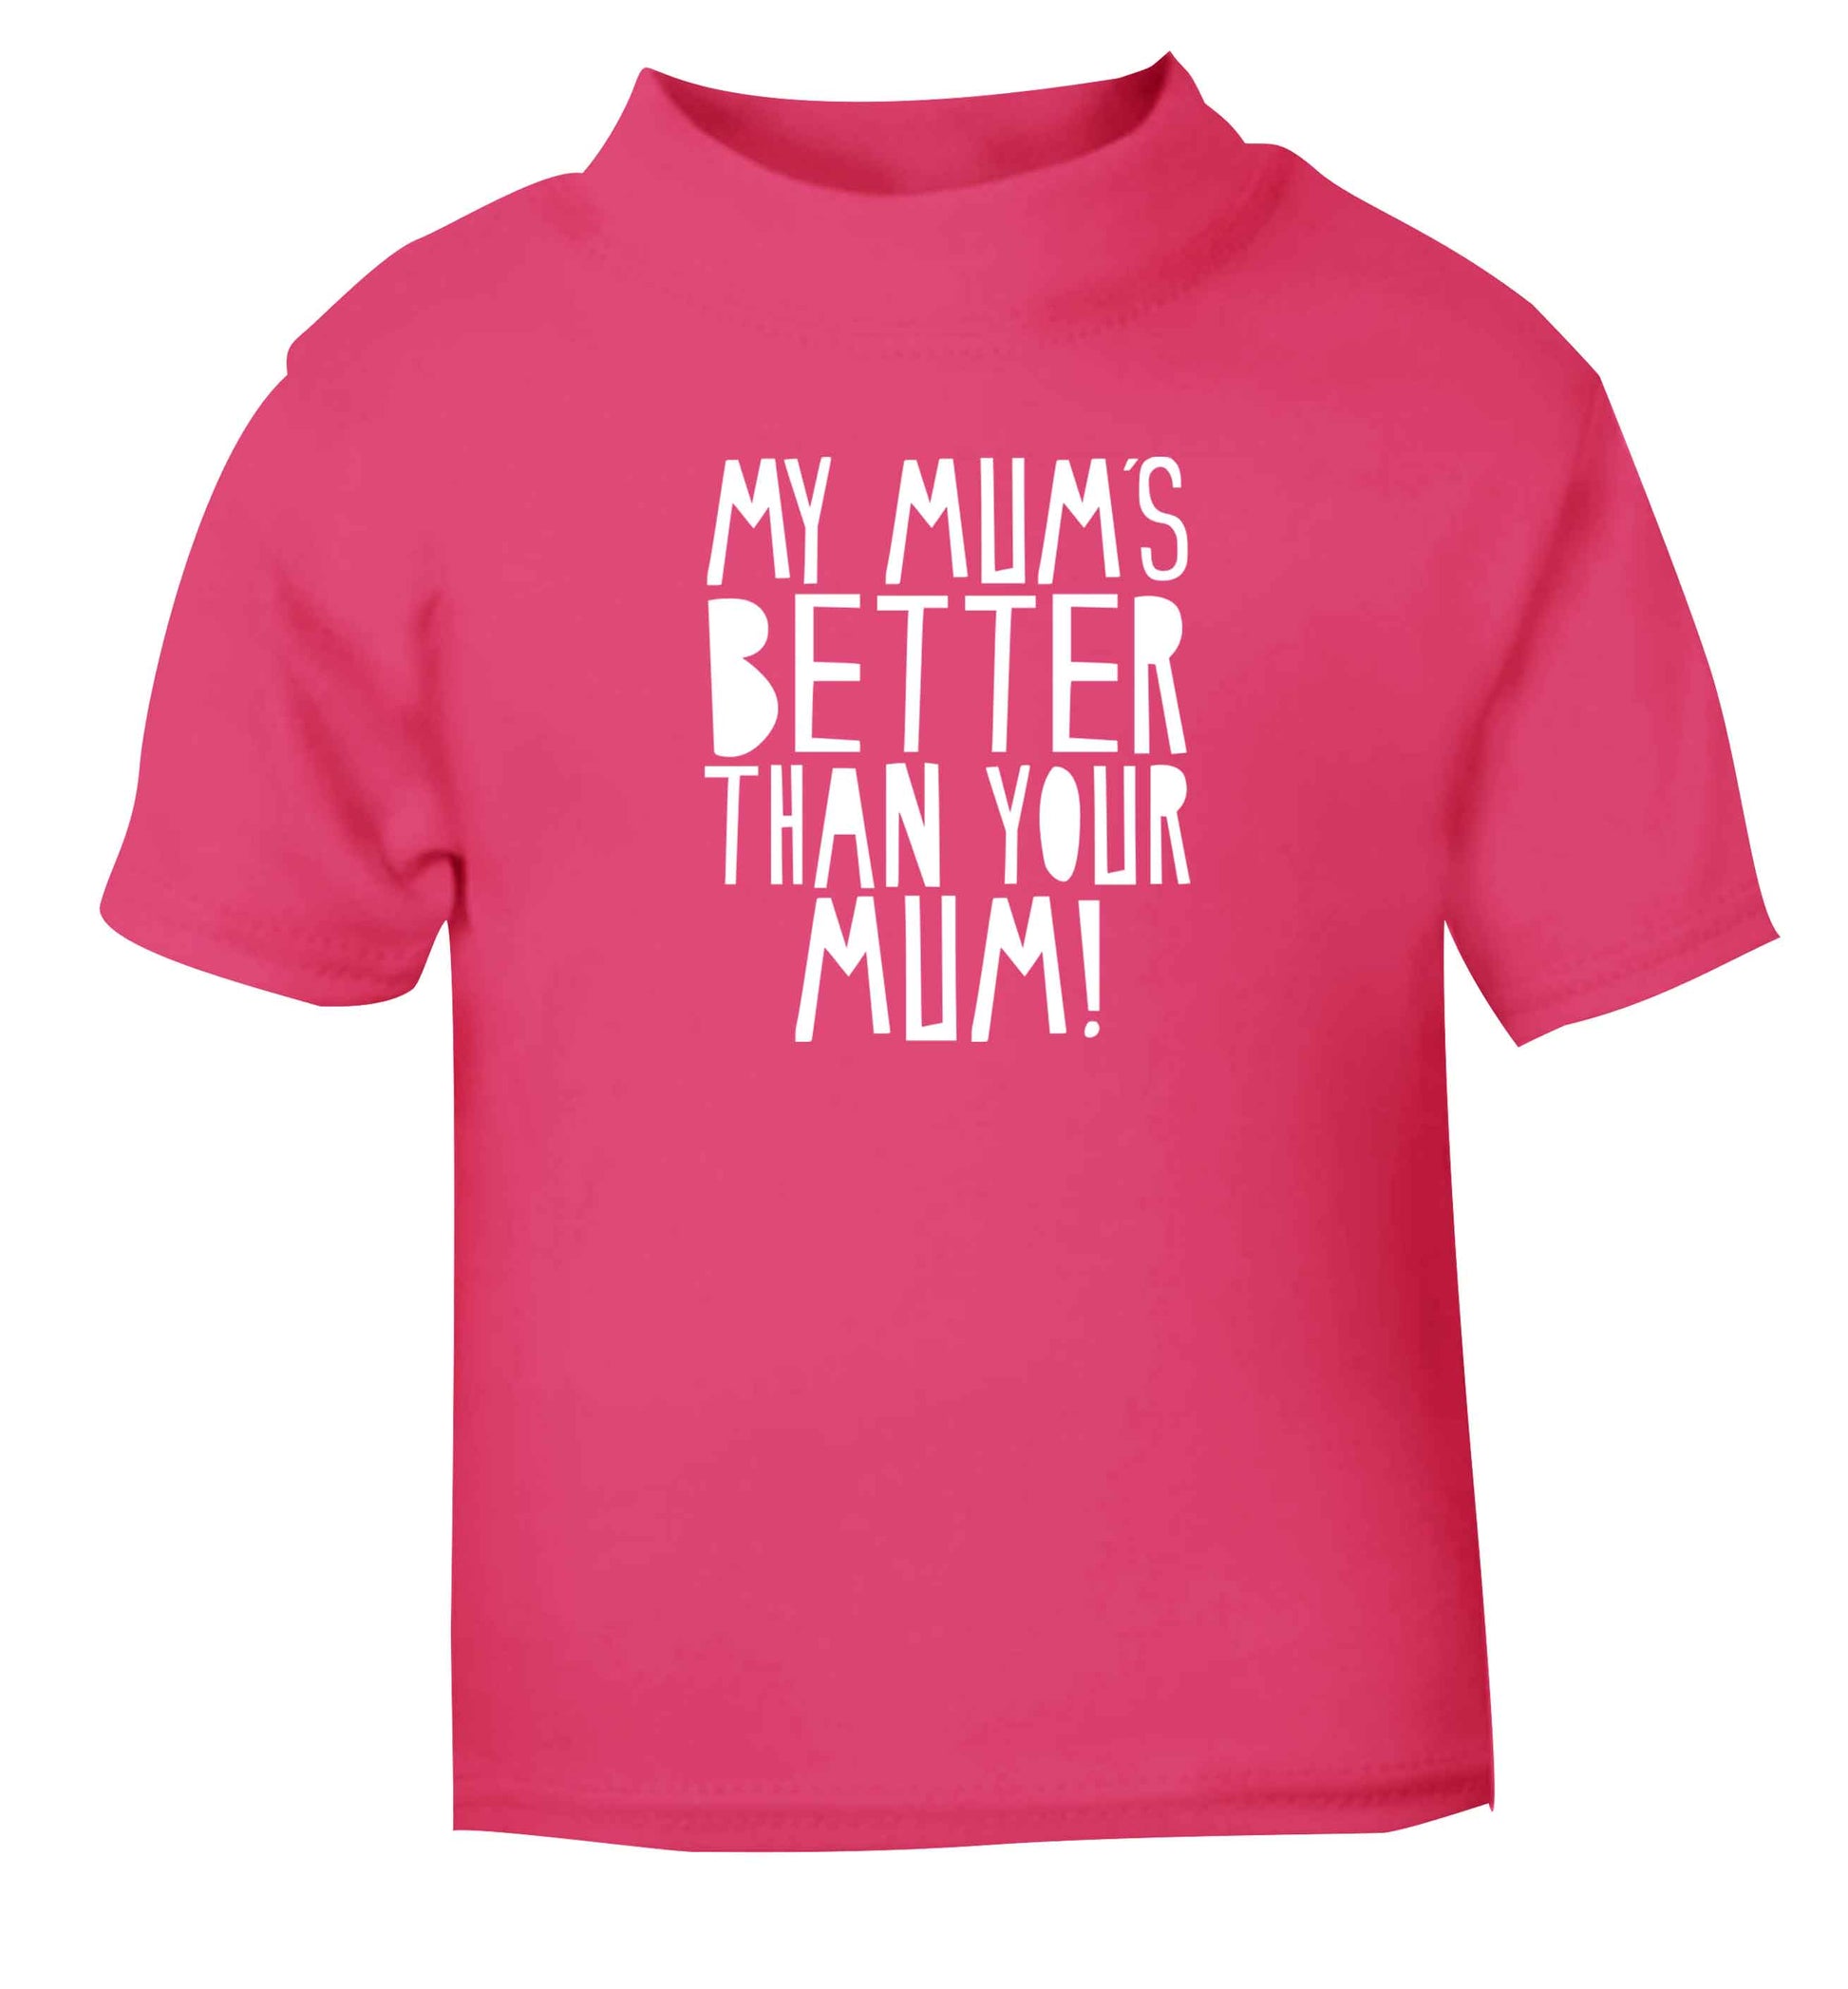 My mum's better than your mum pink baby toddler Tshirt 2 Years